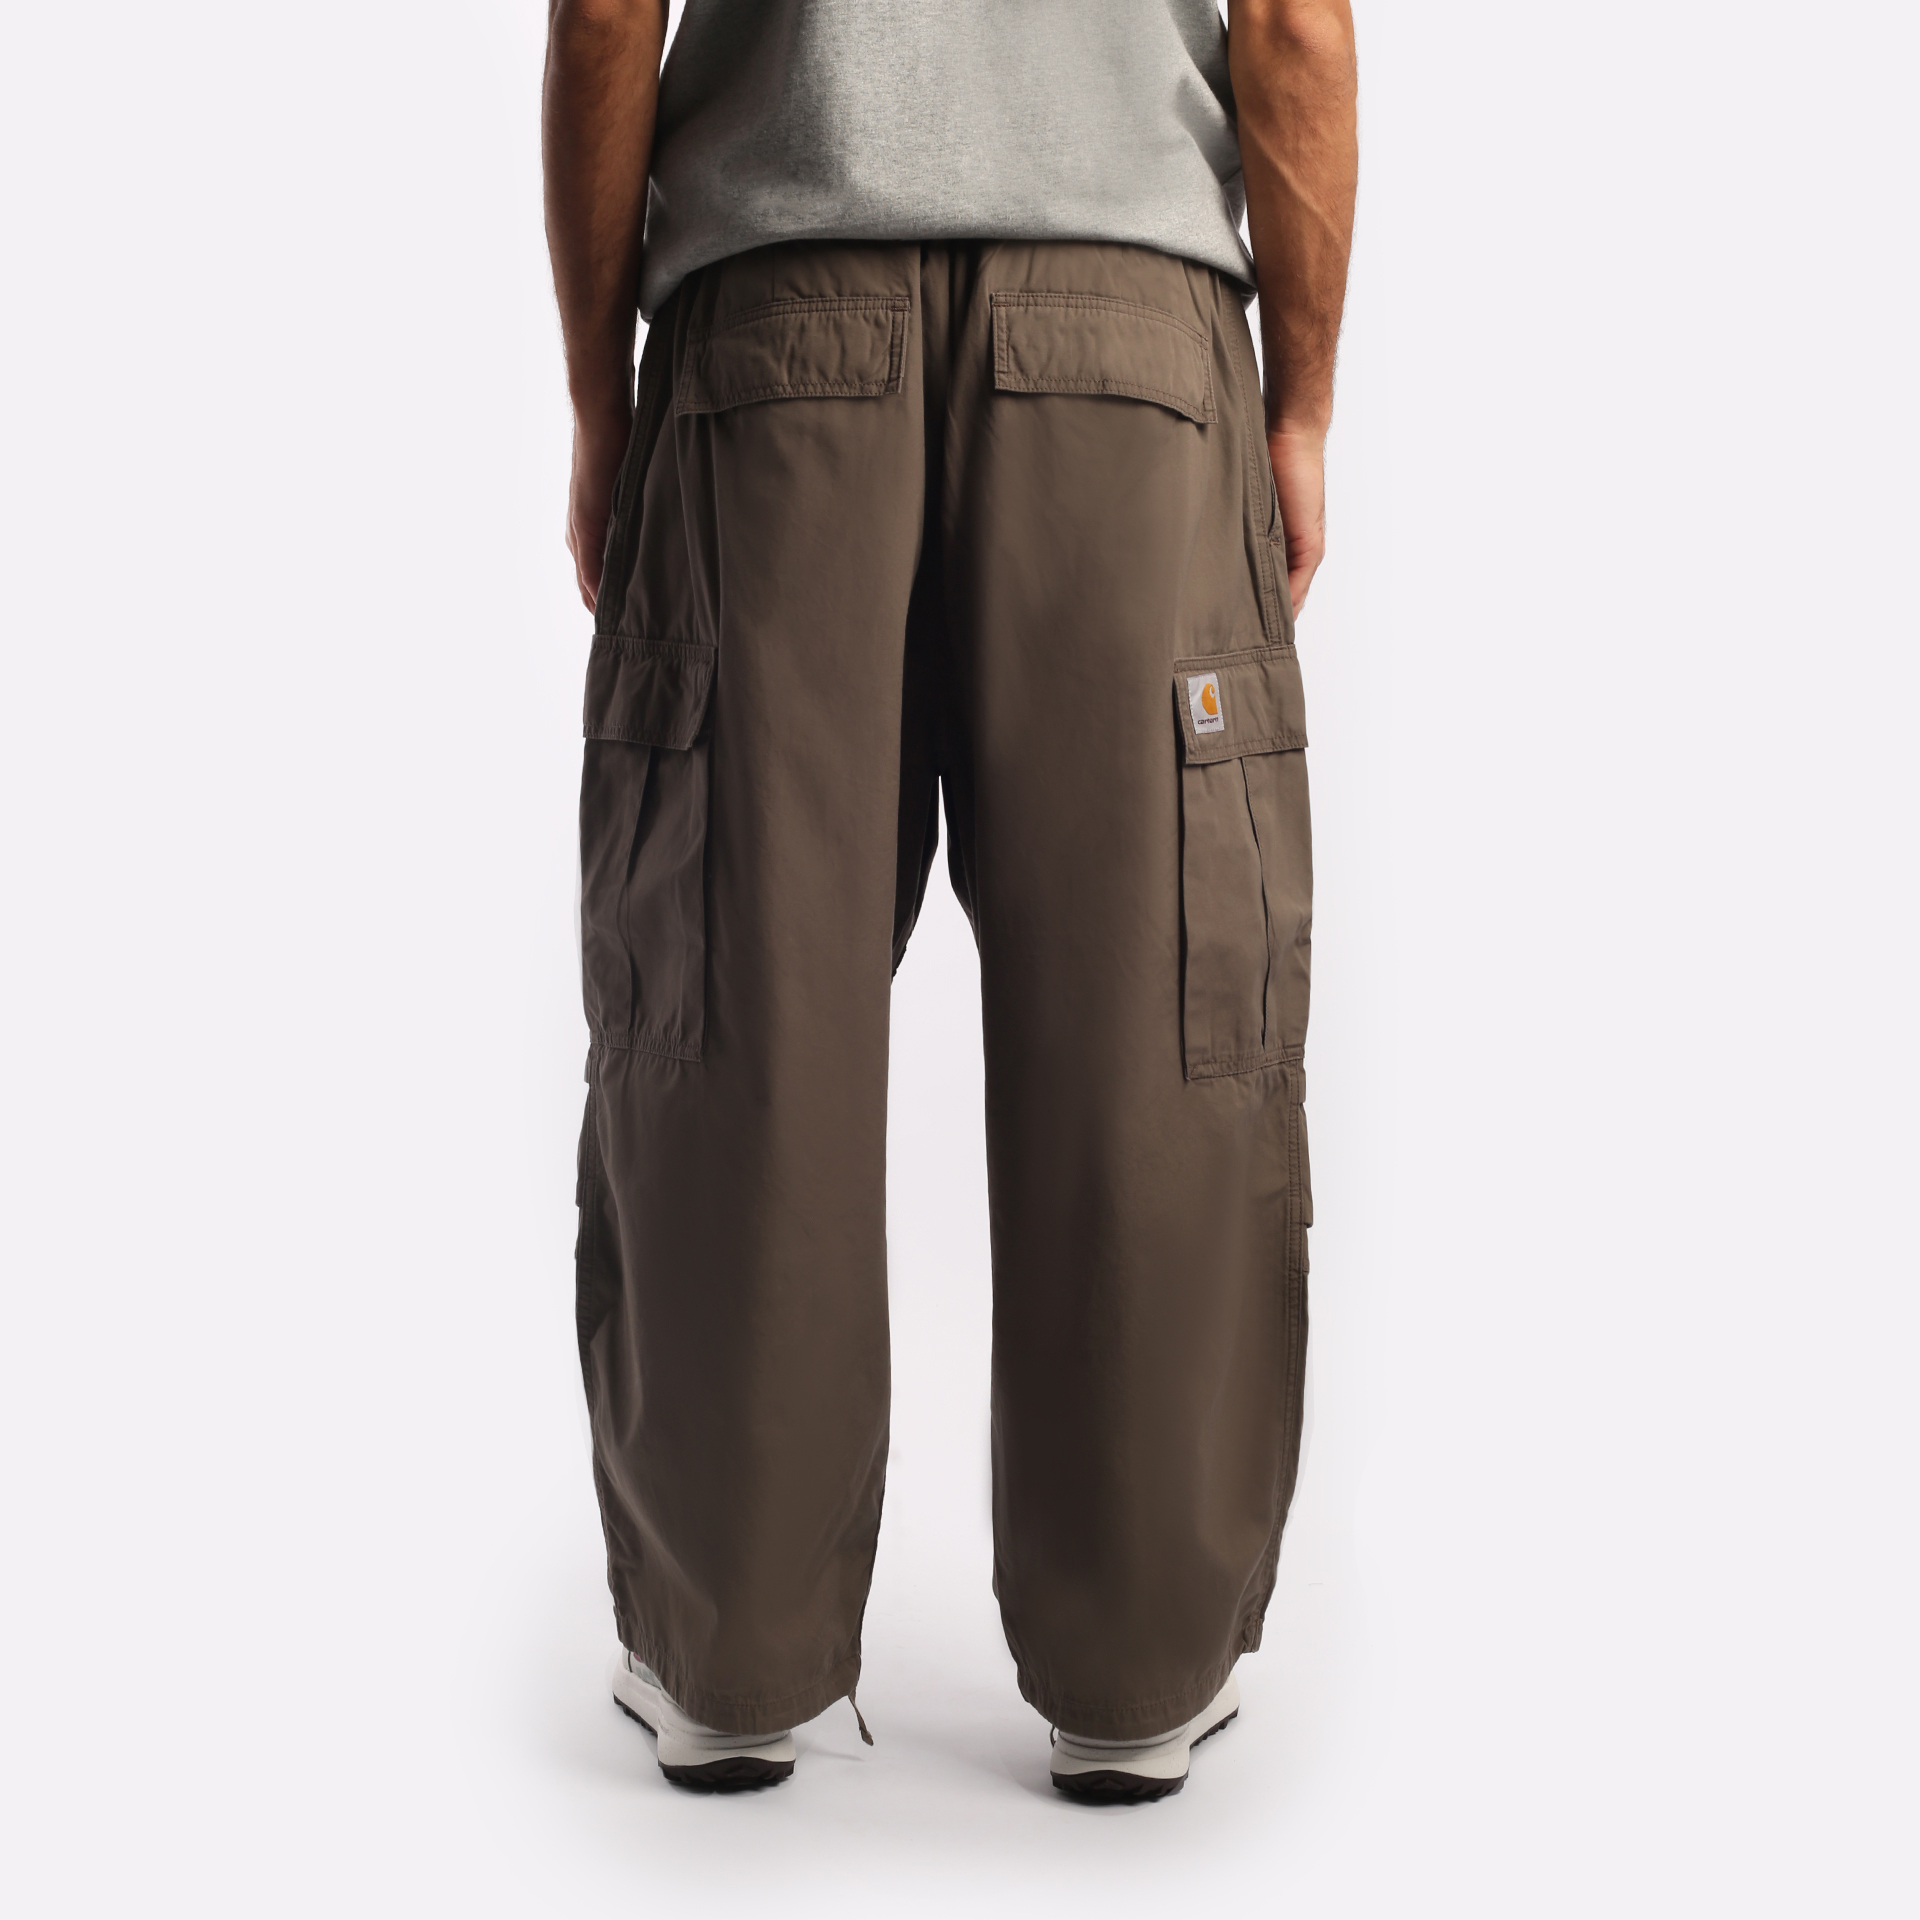 мужские брюки Carhartt WIP Jet  (I031520-barista)  - цена, описание, фото 2